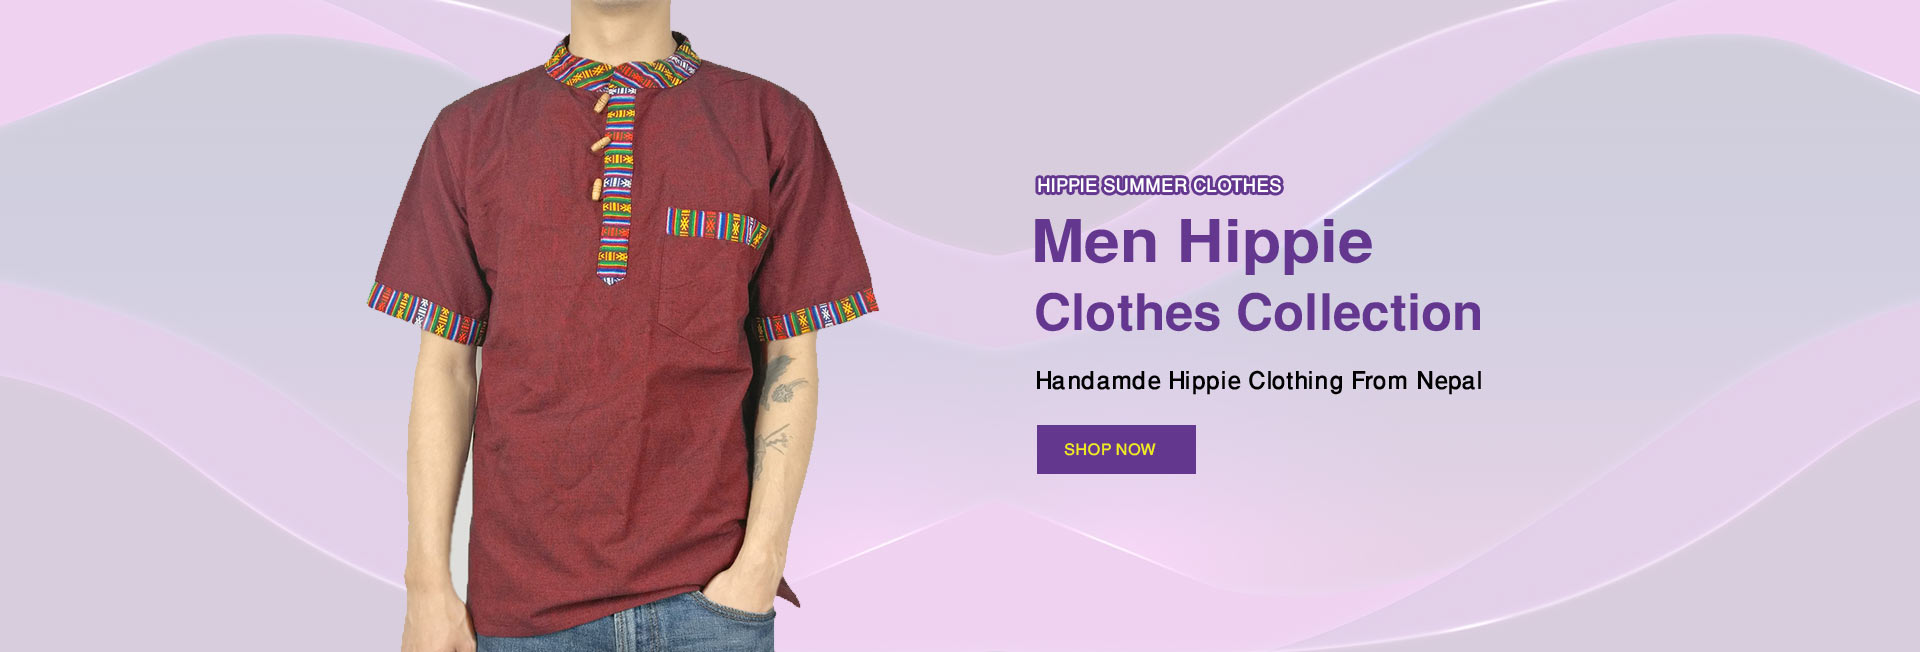 Hippie Clothes for Men